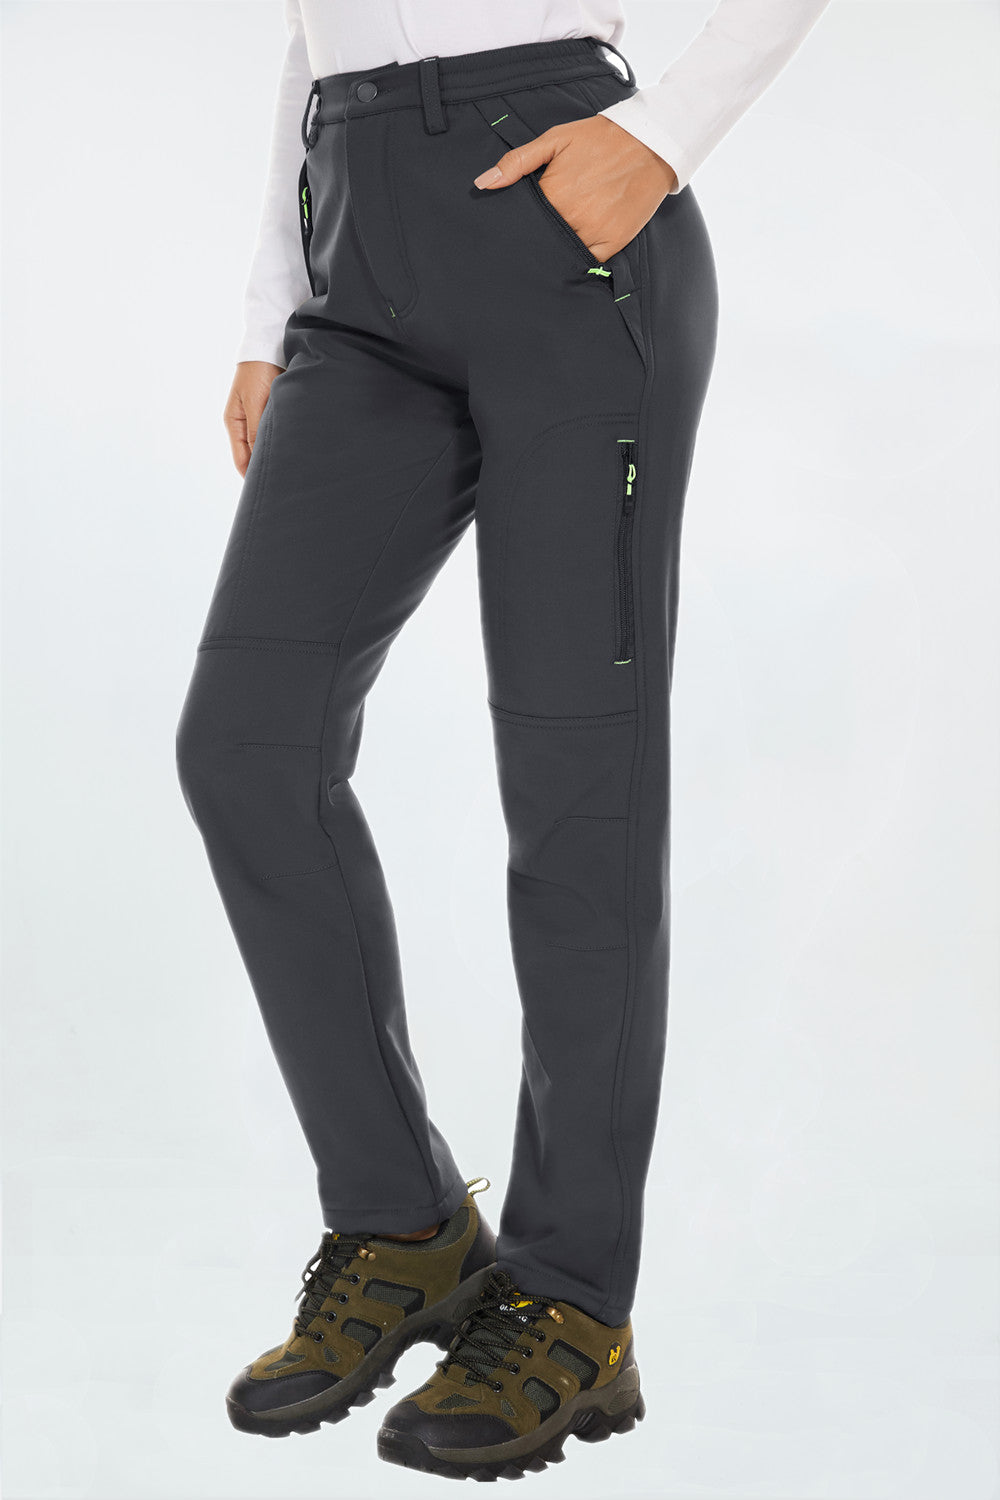 Women's Waterproof Fleece-Lined Hiking Pants with Pockets – PULI